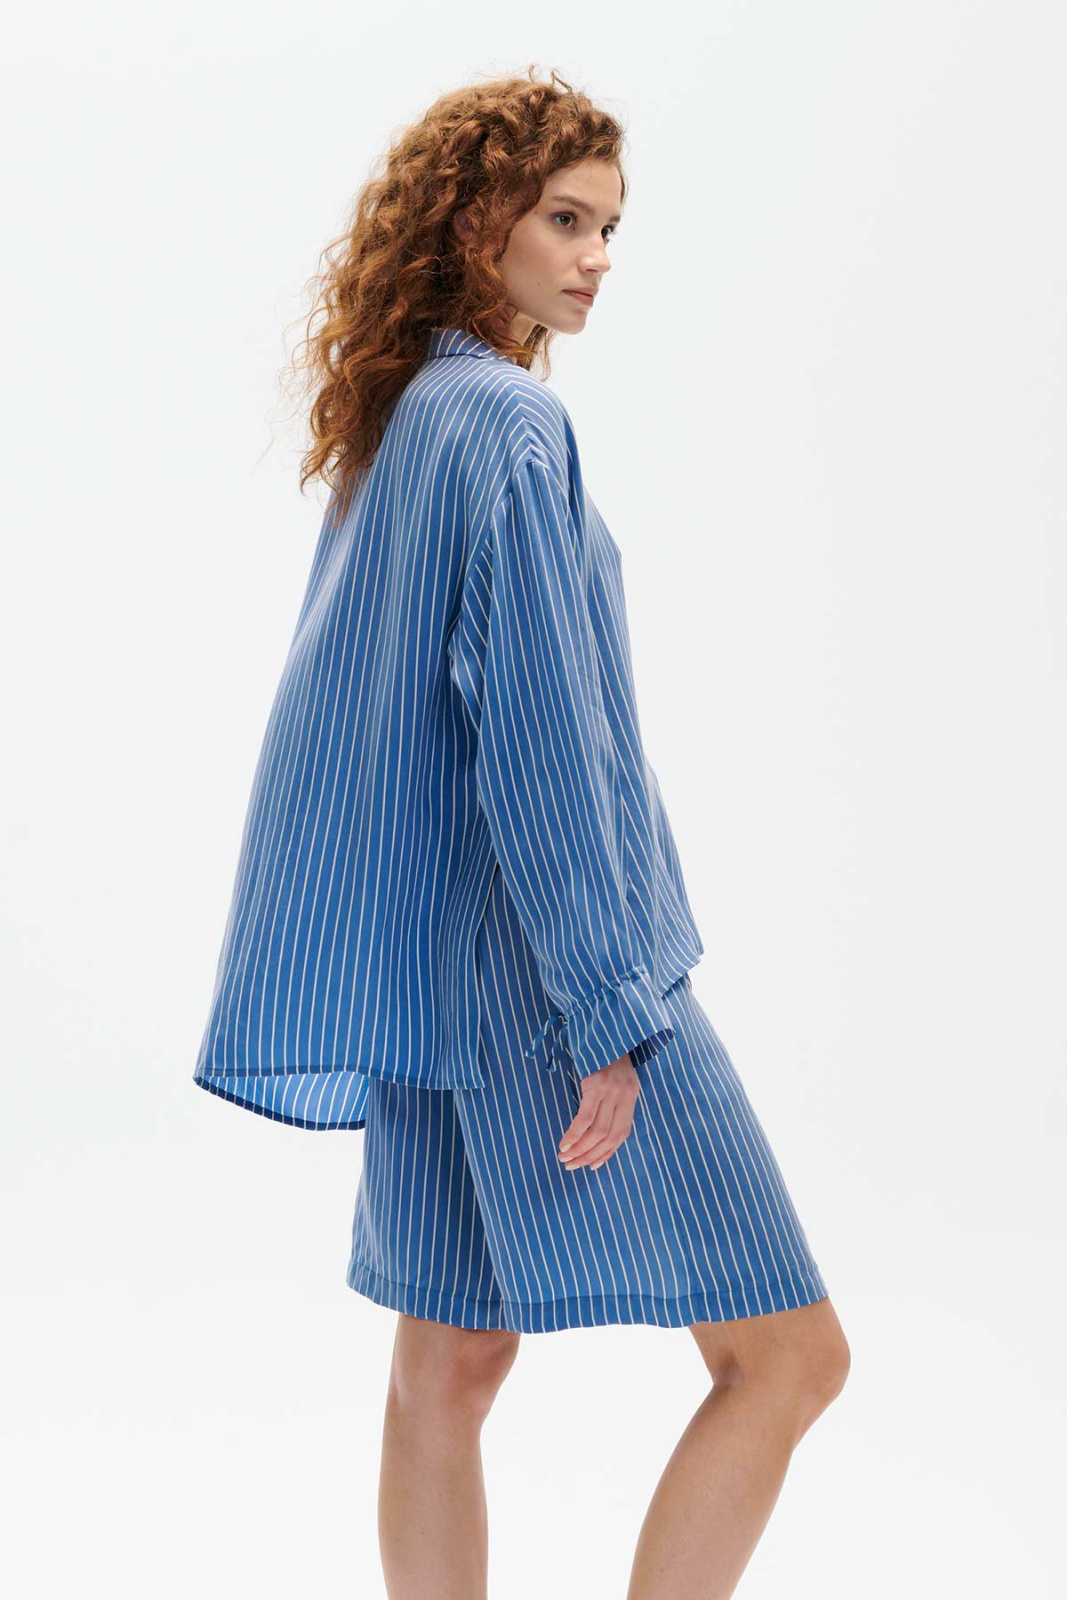 Tris Cupro Shirt Blue Stripes Outlet Elementy